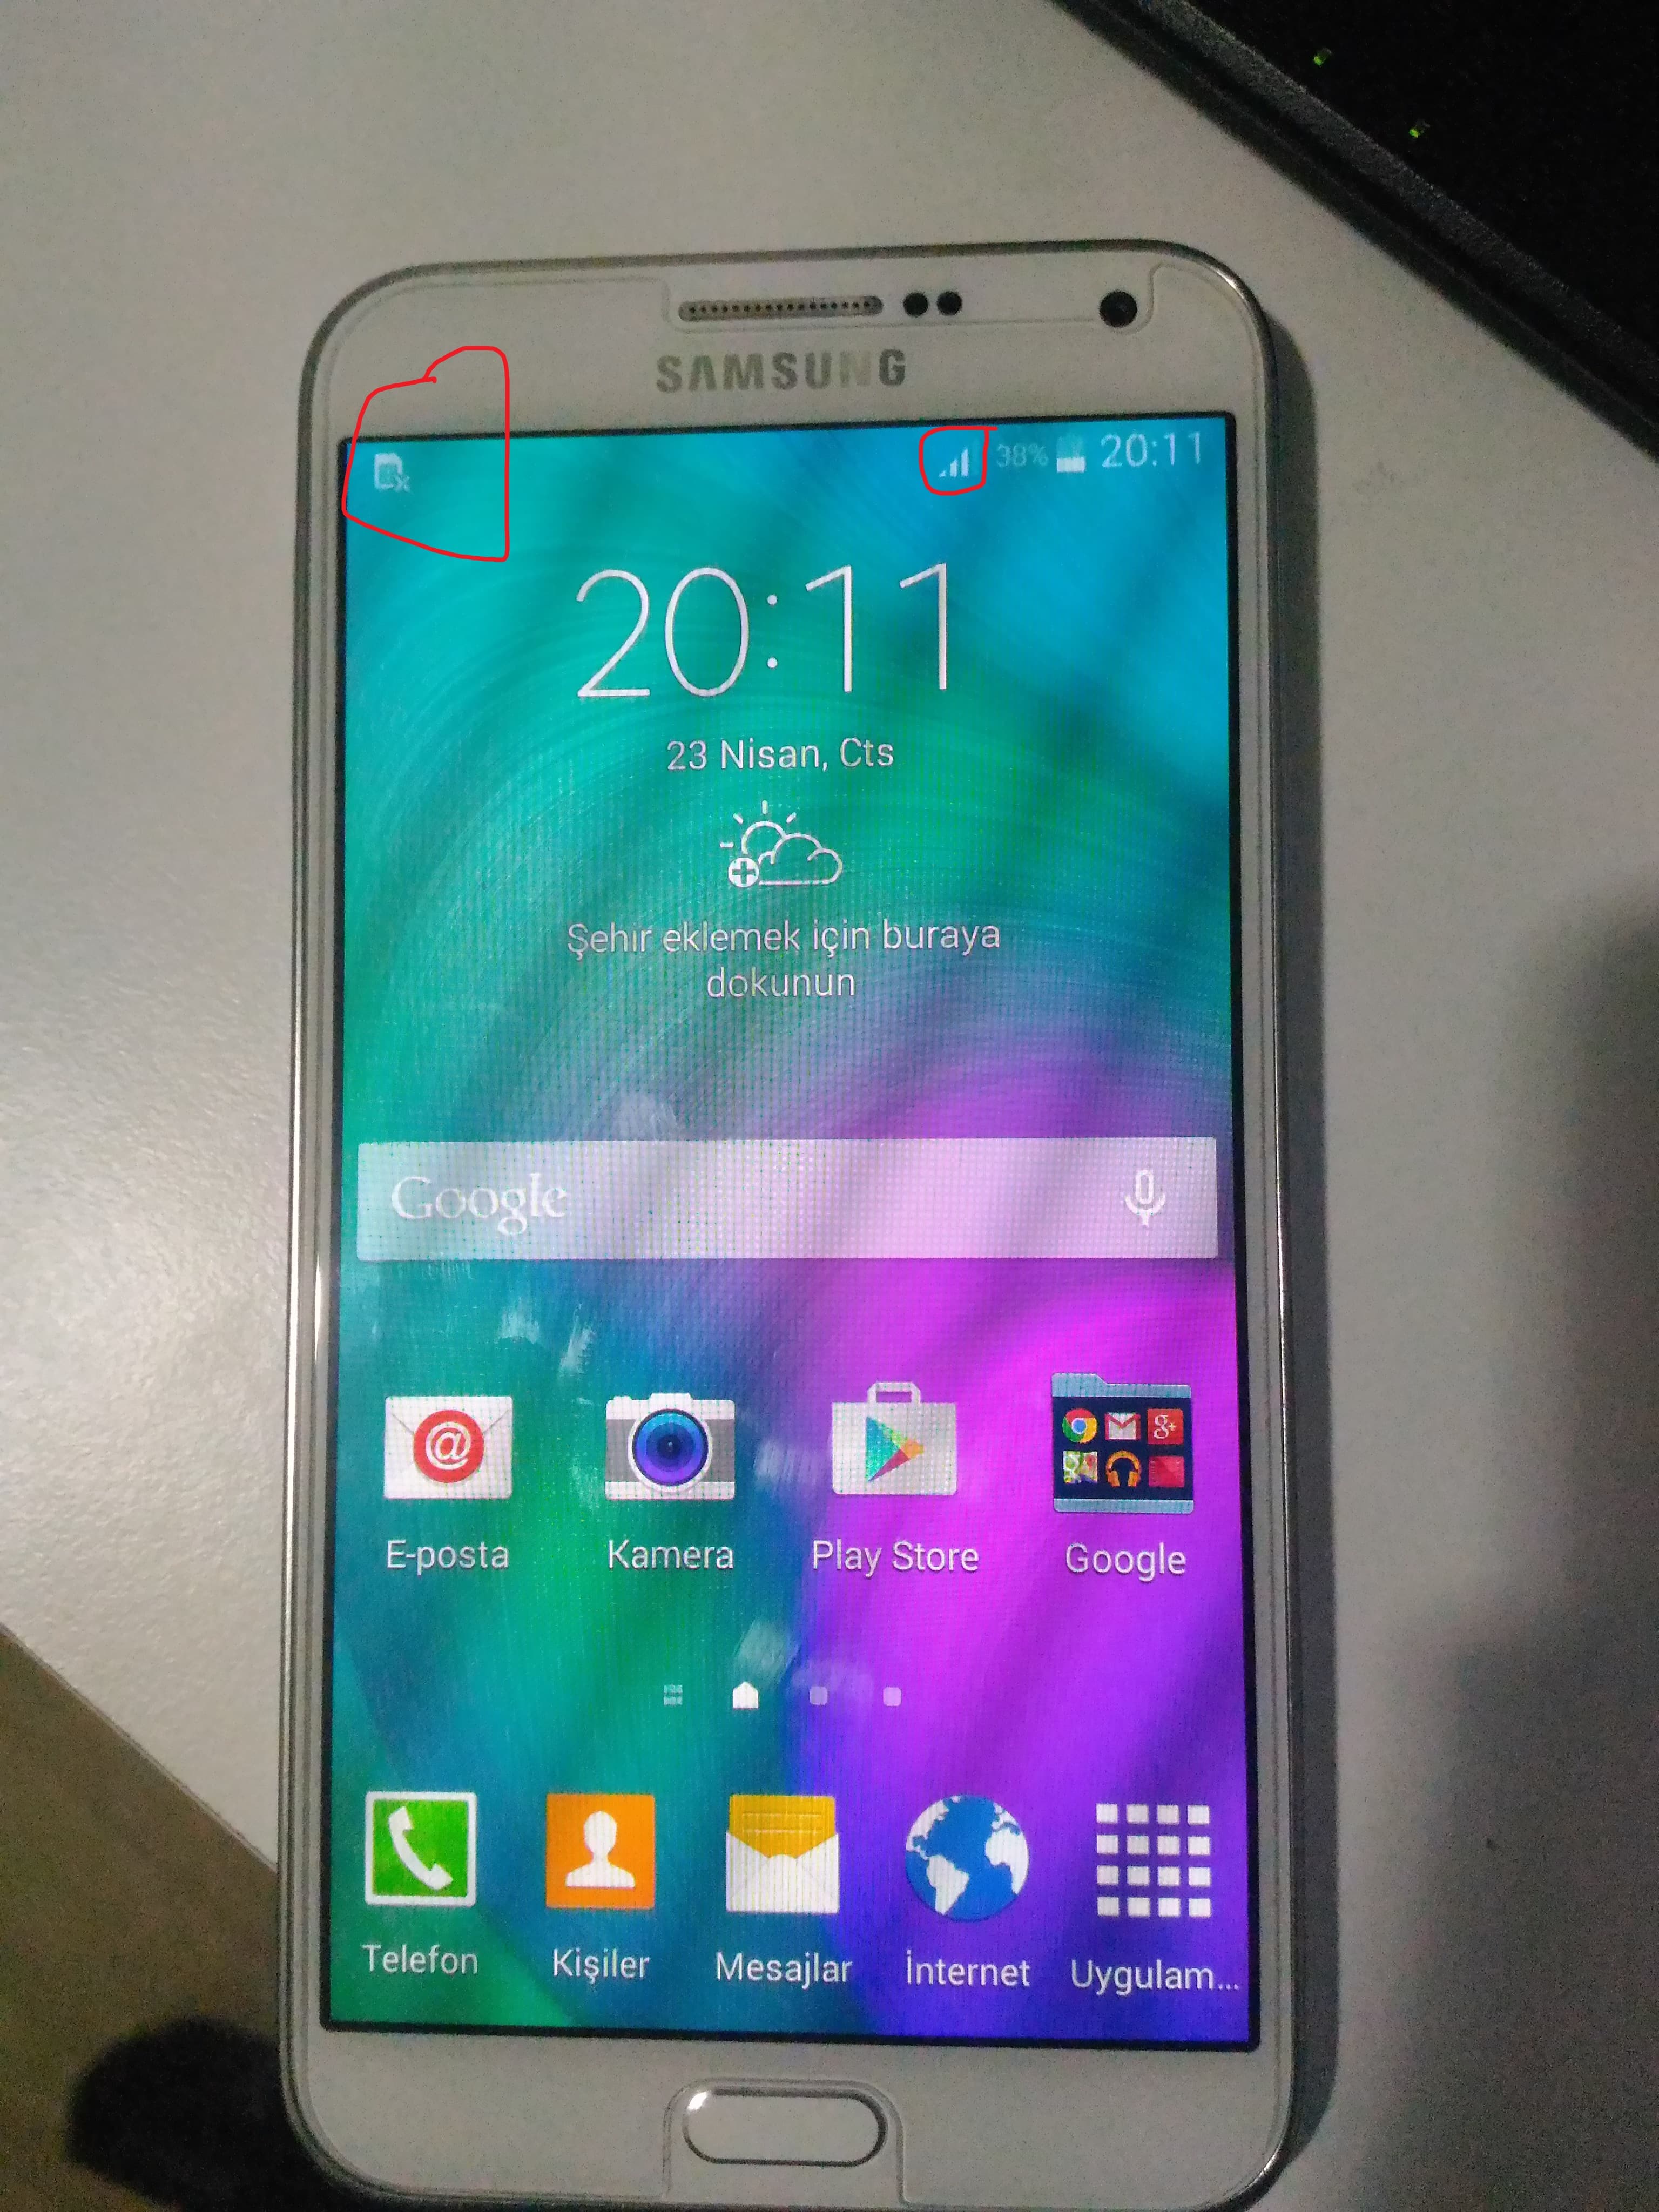 Yenilenmiş Samsung Galaxy E7 (12 Ay Garantili) Fiyatı